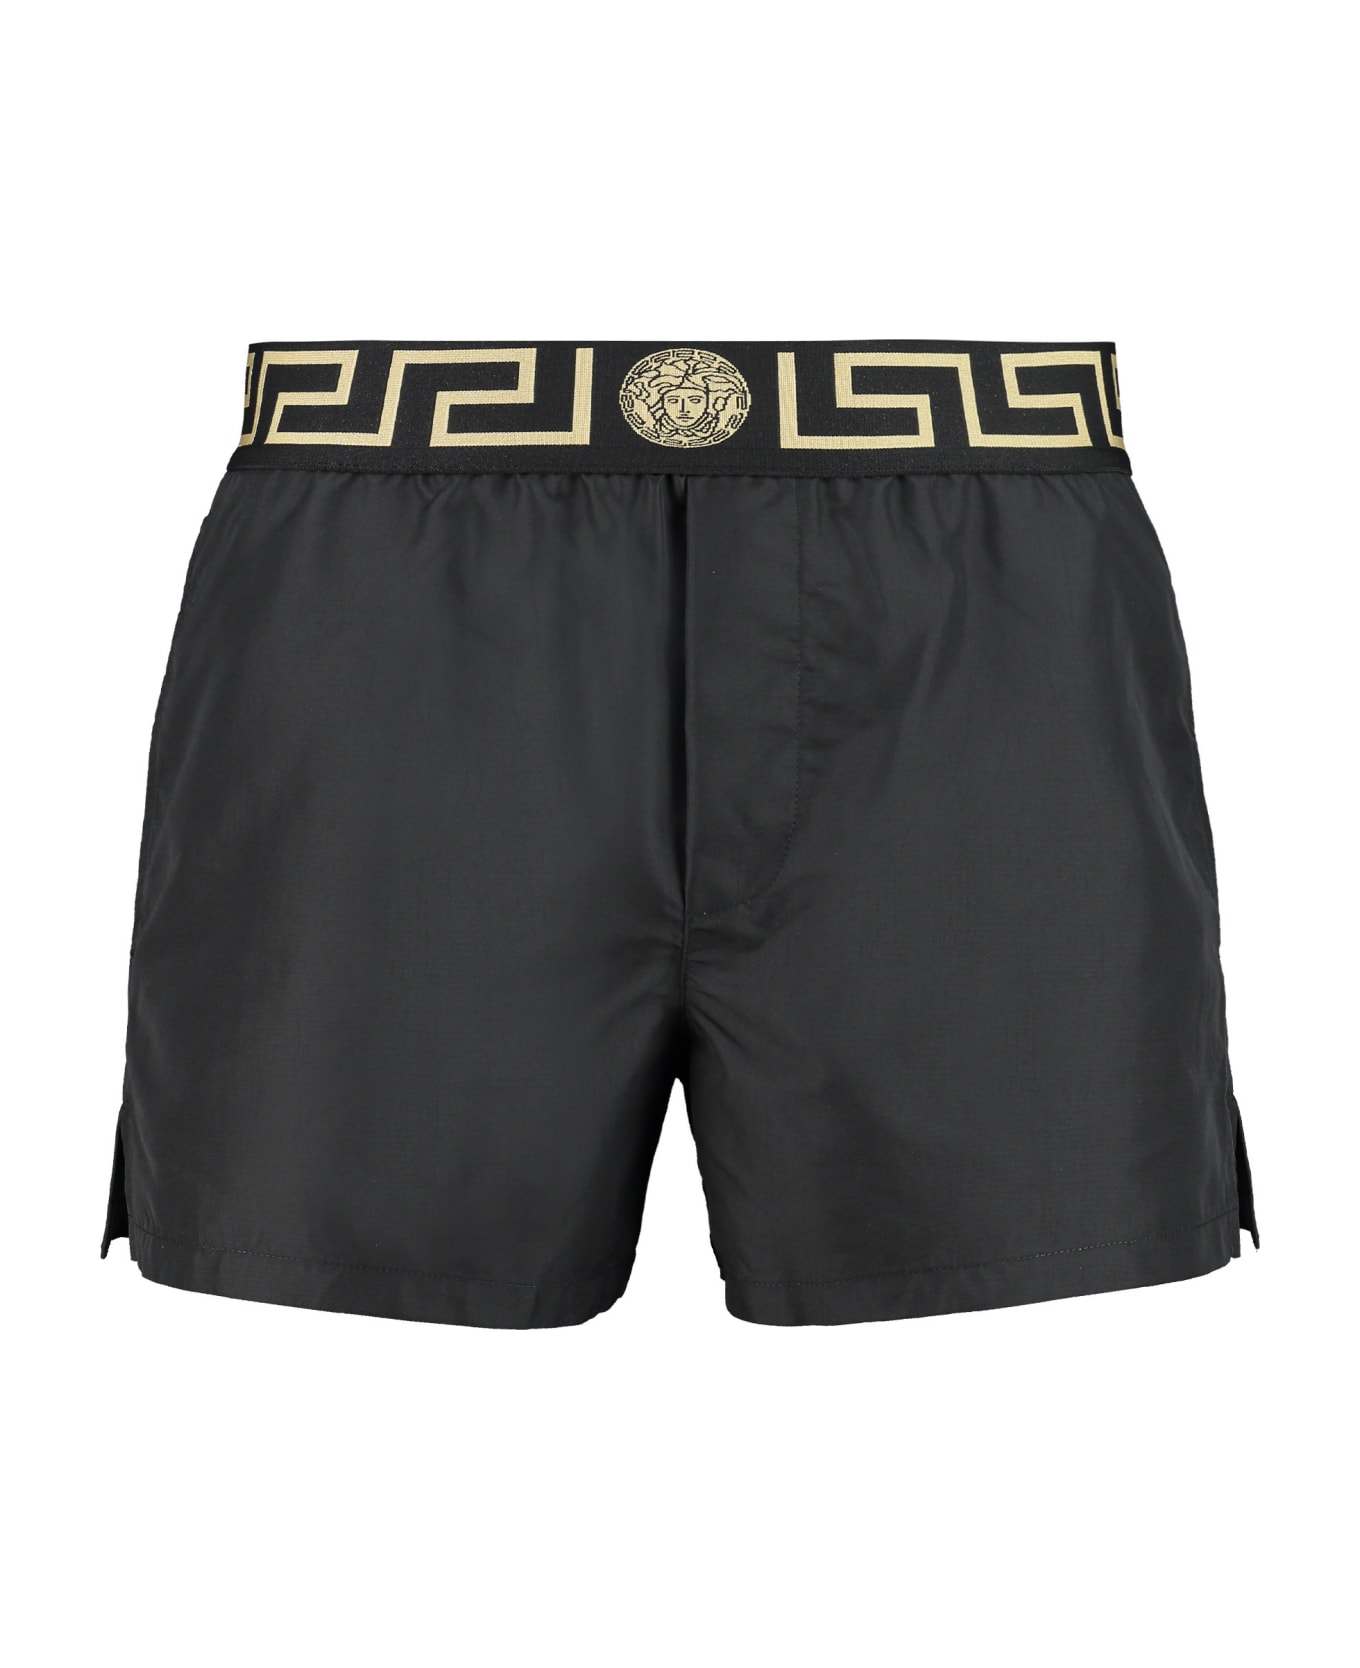 Versace Swim Shorts - Nero Greco Oro